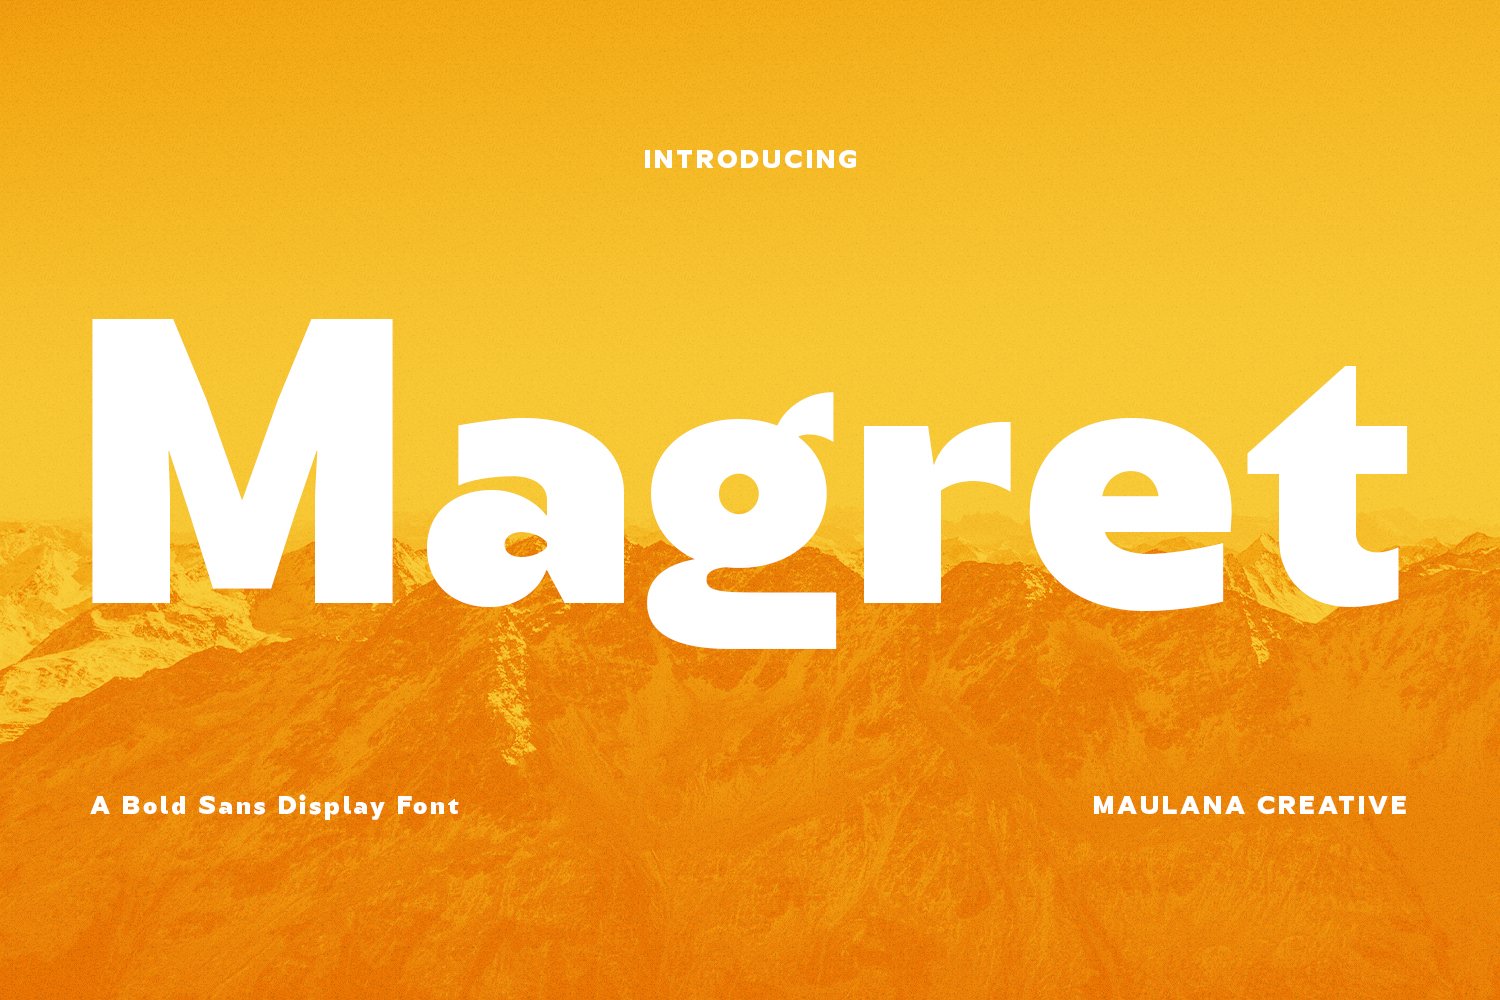 Magret Display Font cover image.